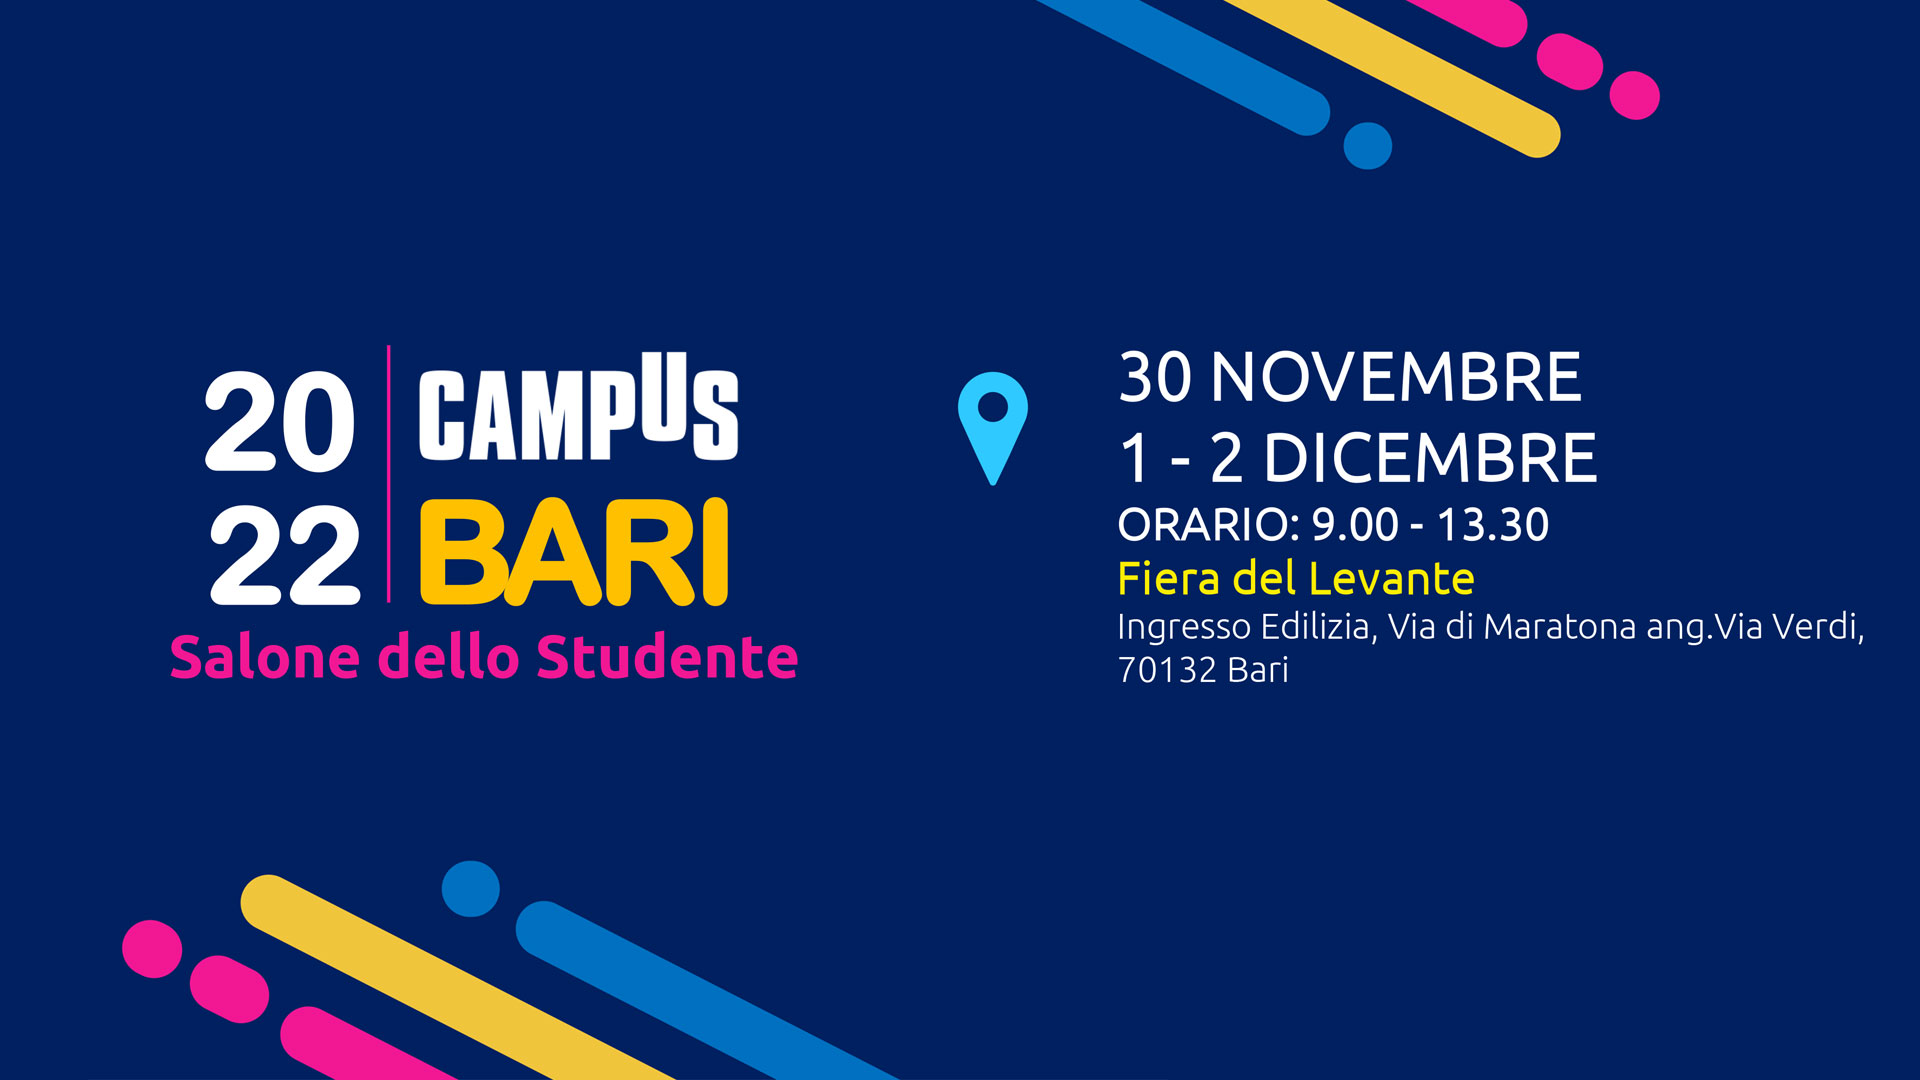 Salone dello Studente – Campus Bari / 30 Novembre, 1-2 Dicembre